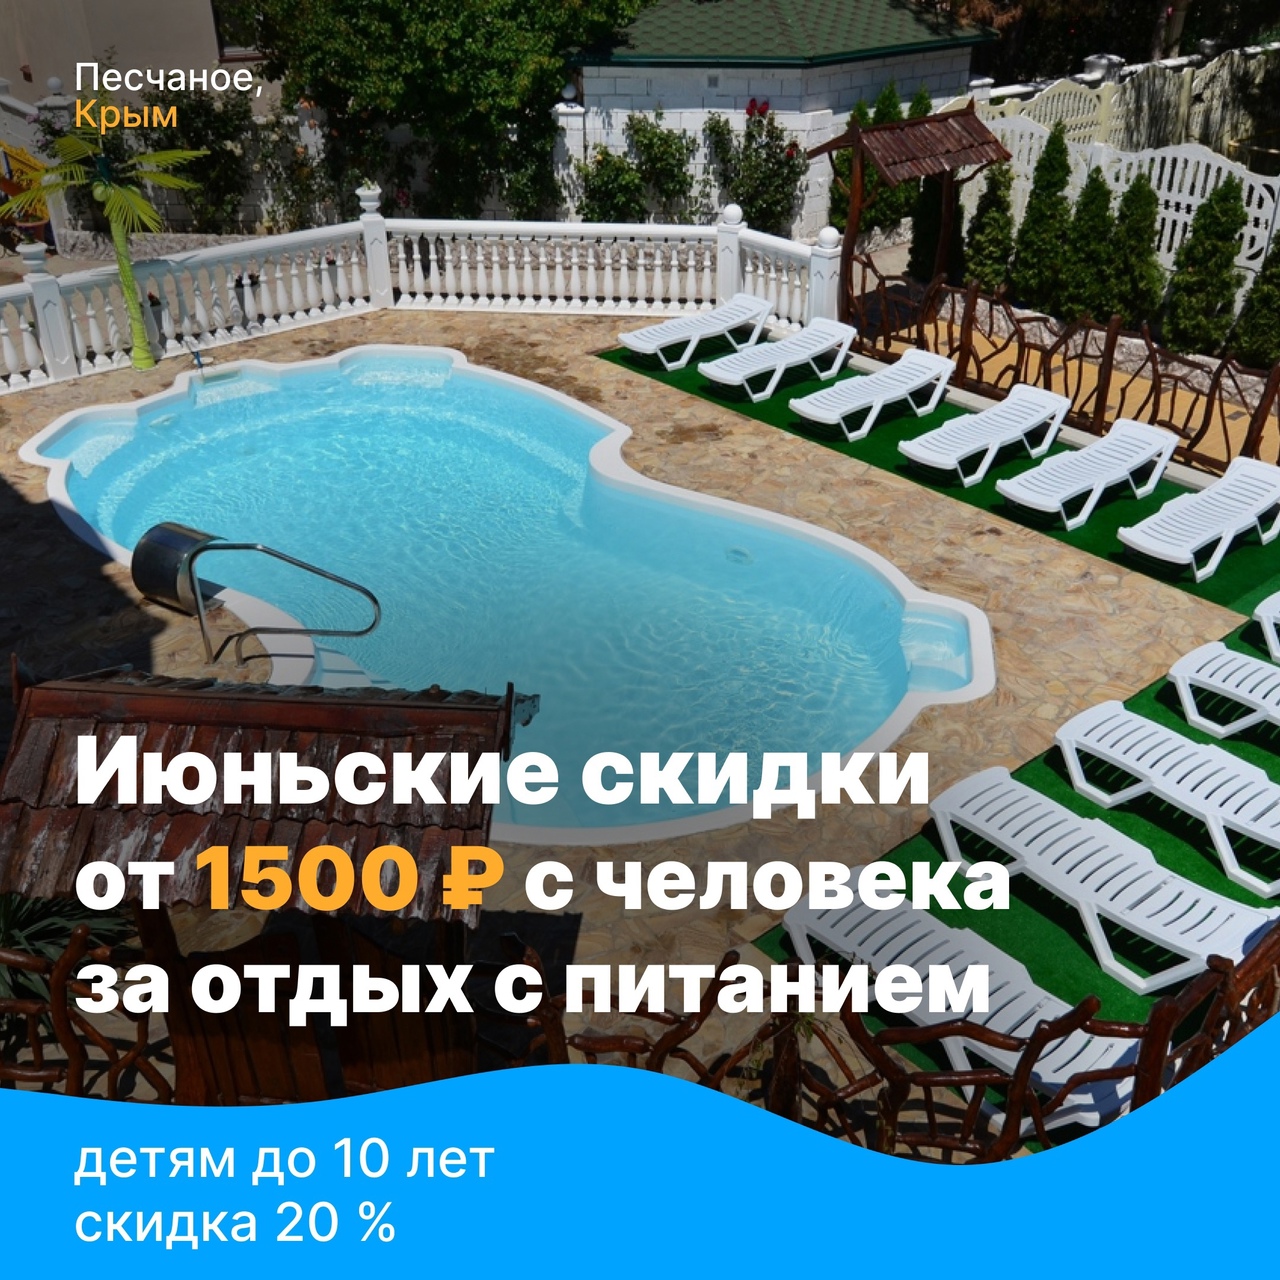 Снижение цен на отдых в июне в Песчаном 